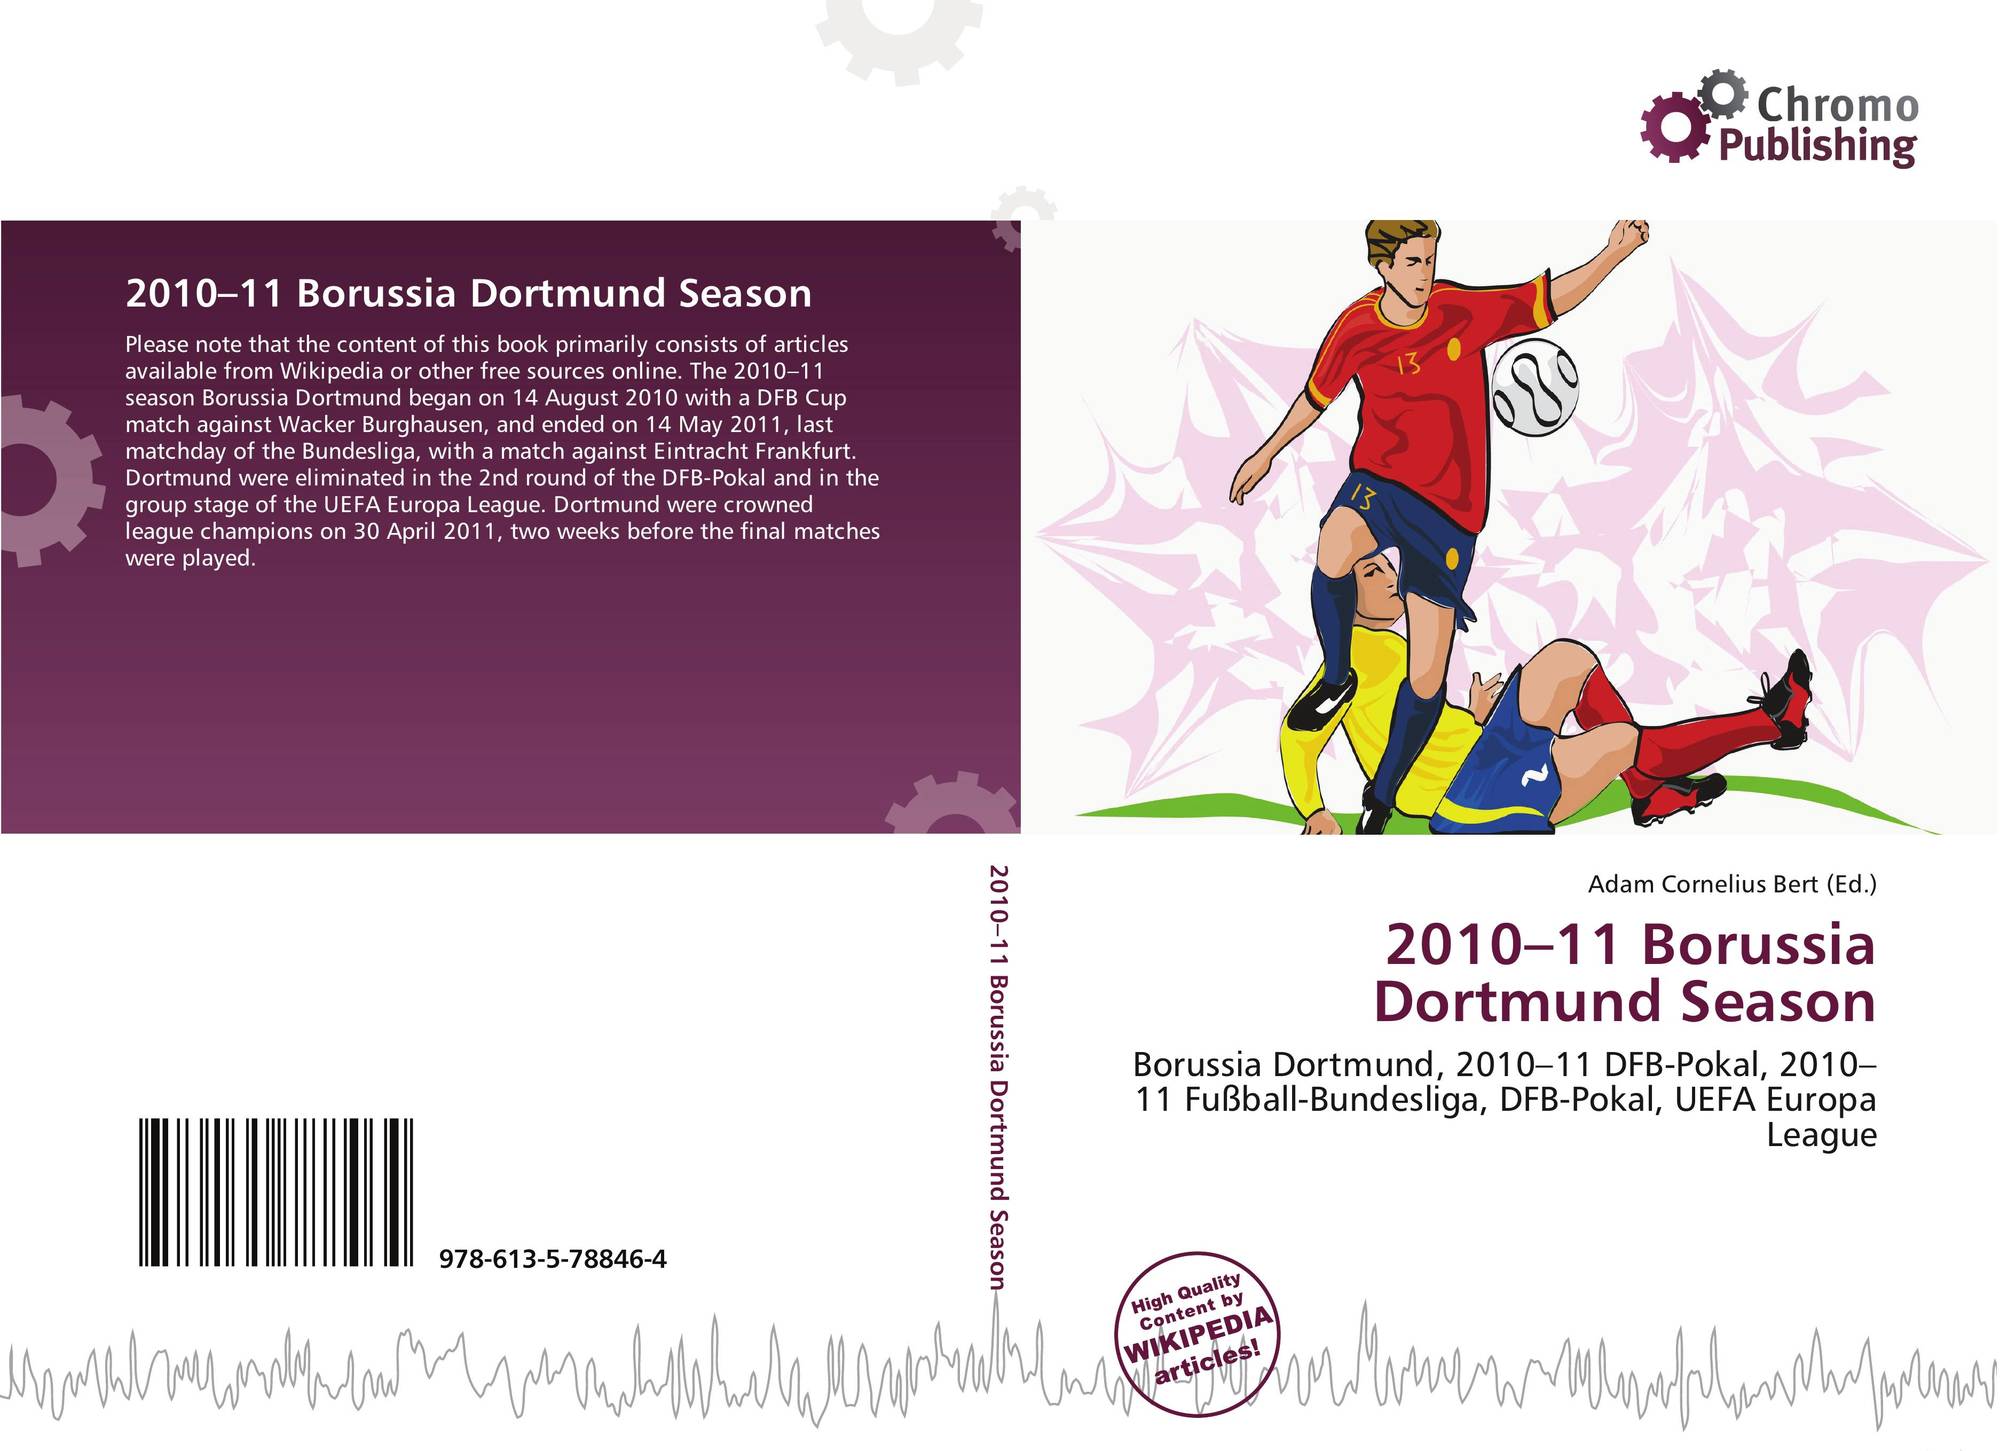 2010 11 Borussia Dortmund Season 978 613 5 78846 4 6135788469 9786135788464